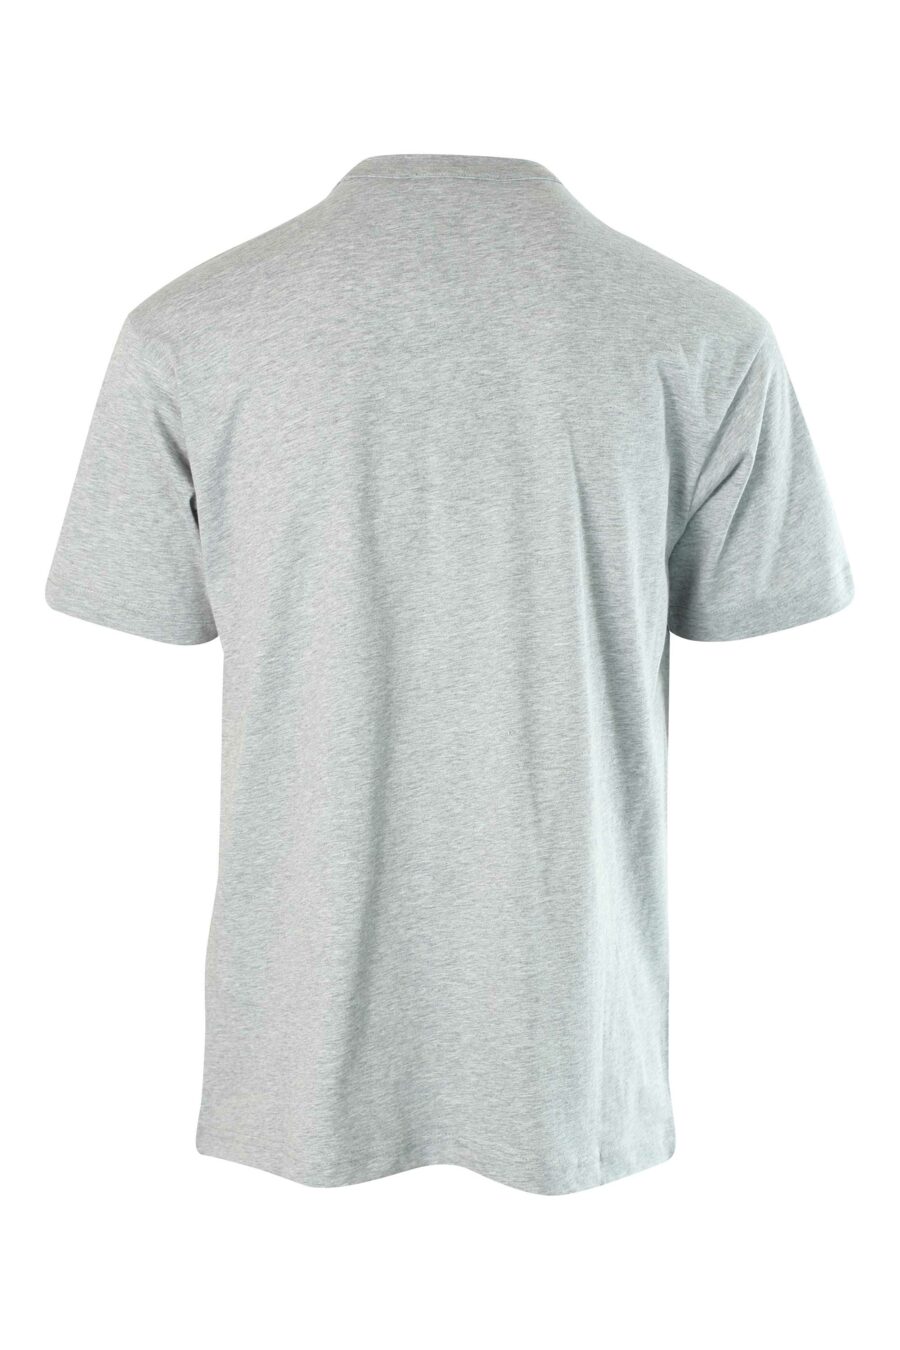 Camiseta gris con maxilogo centrado - 8052019236675 2